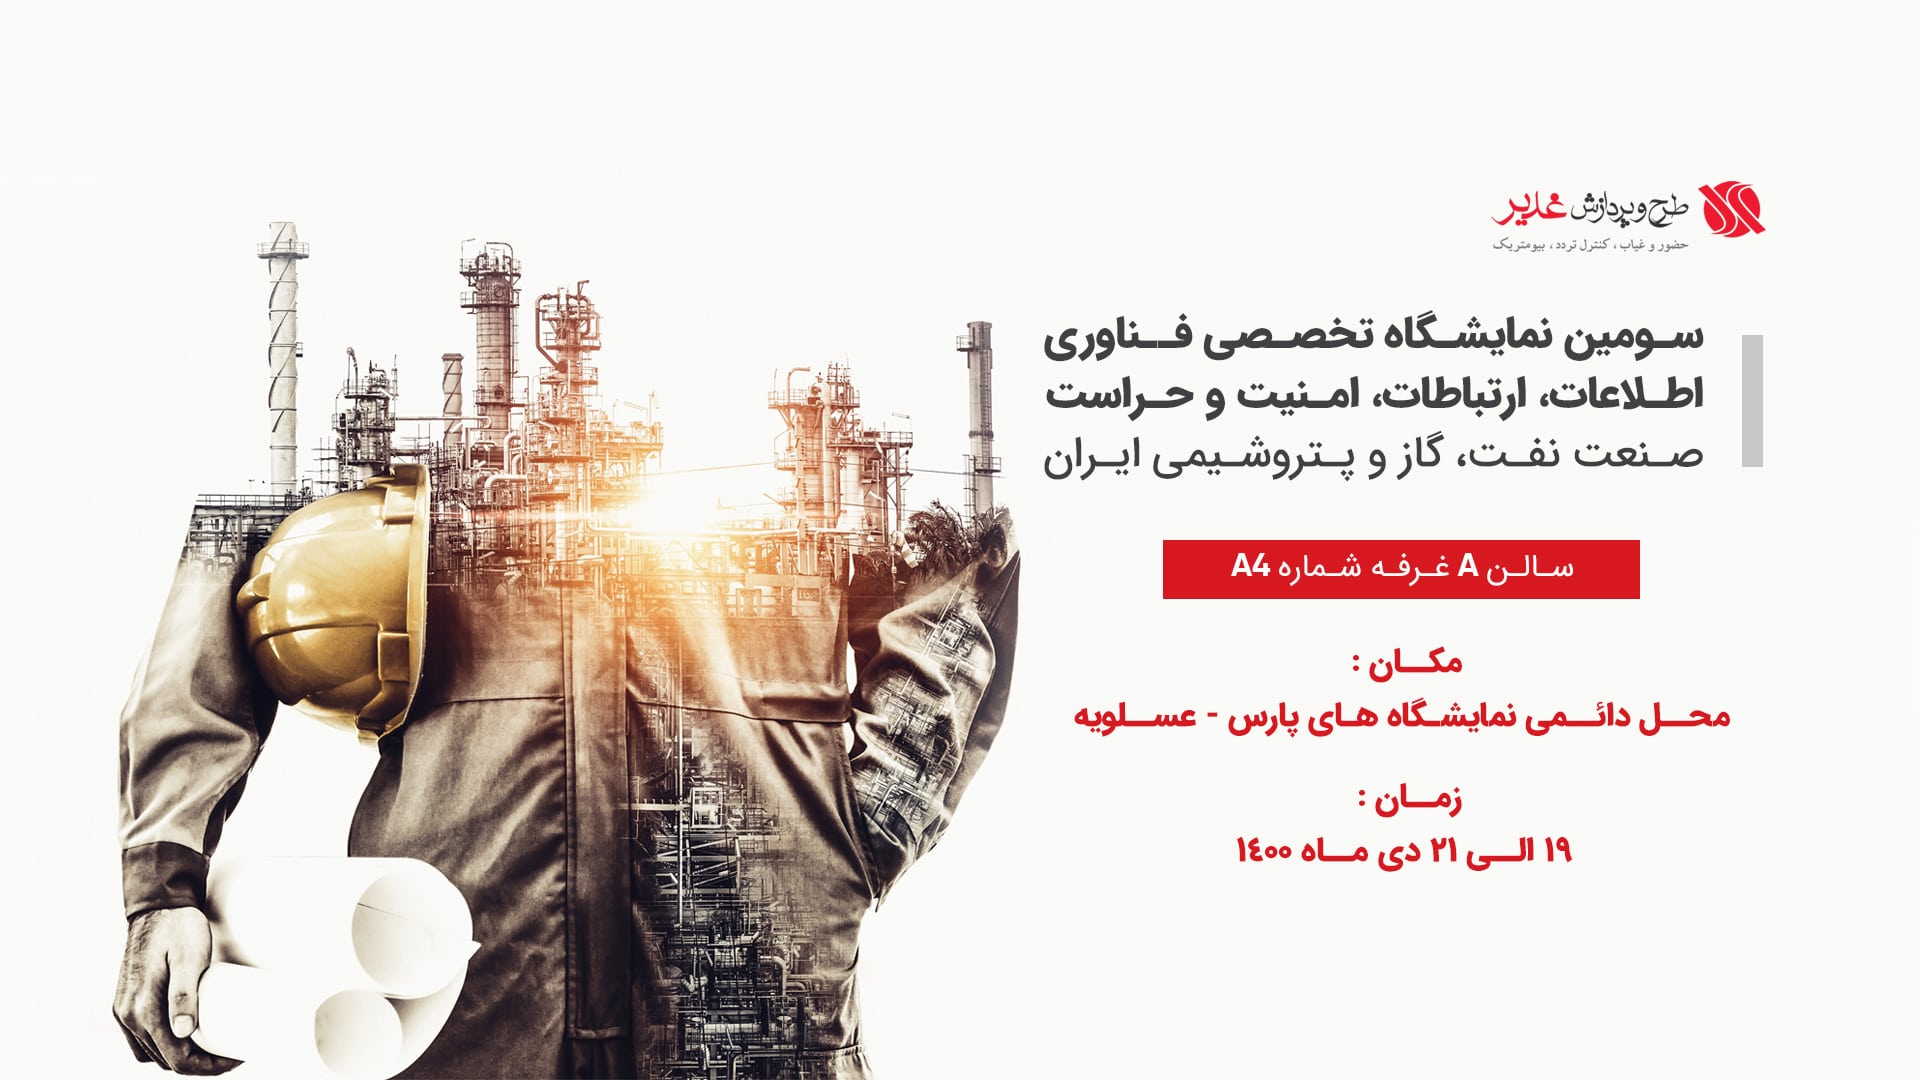 سومین نمایشگاه تخصصی فناوری اطلاعات، ارتباطات، امنیت و حراست صنعت نفت، گاز و پتروشیمی ایران